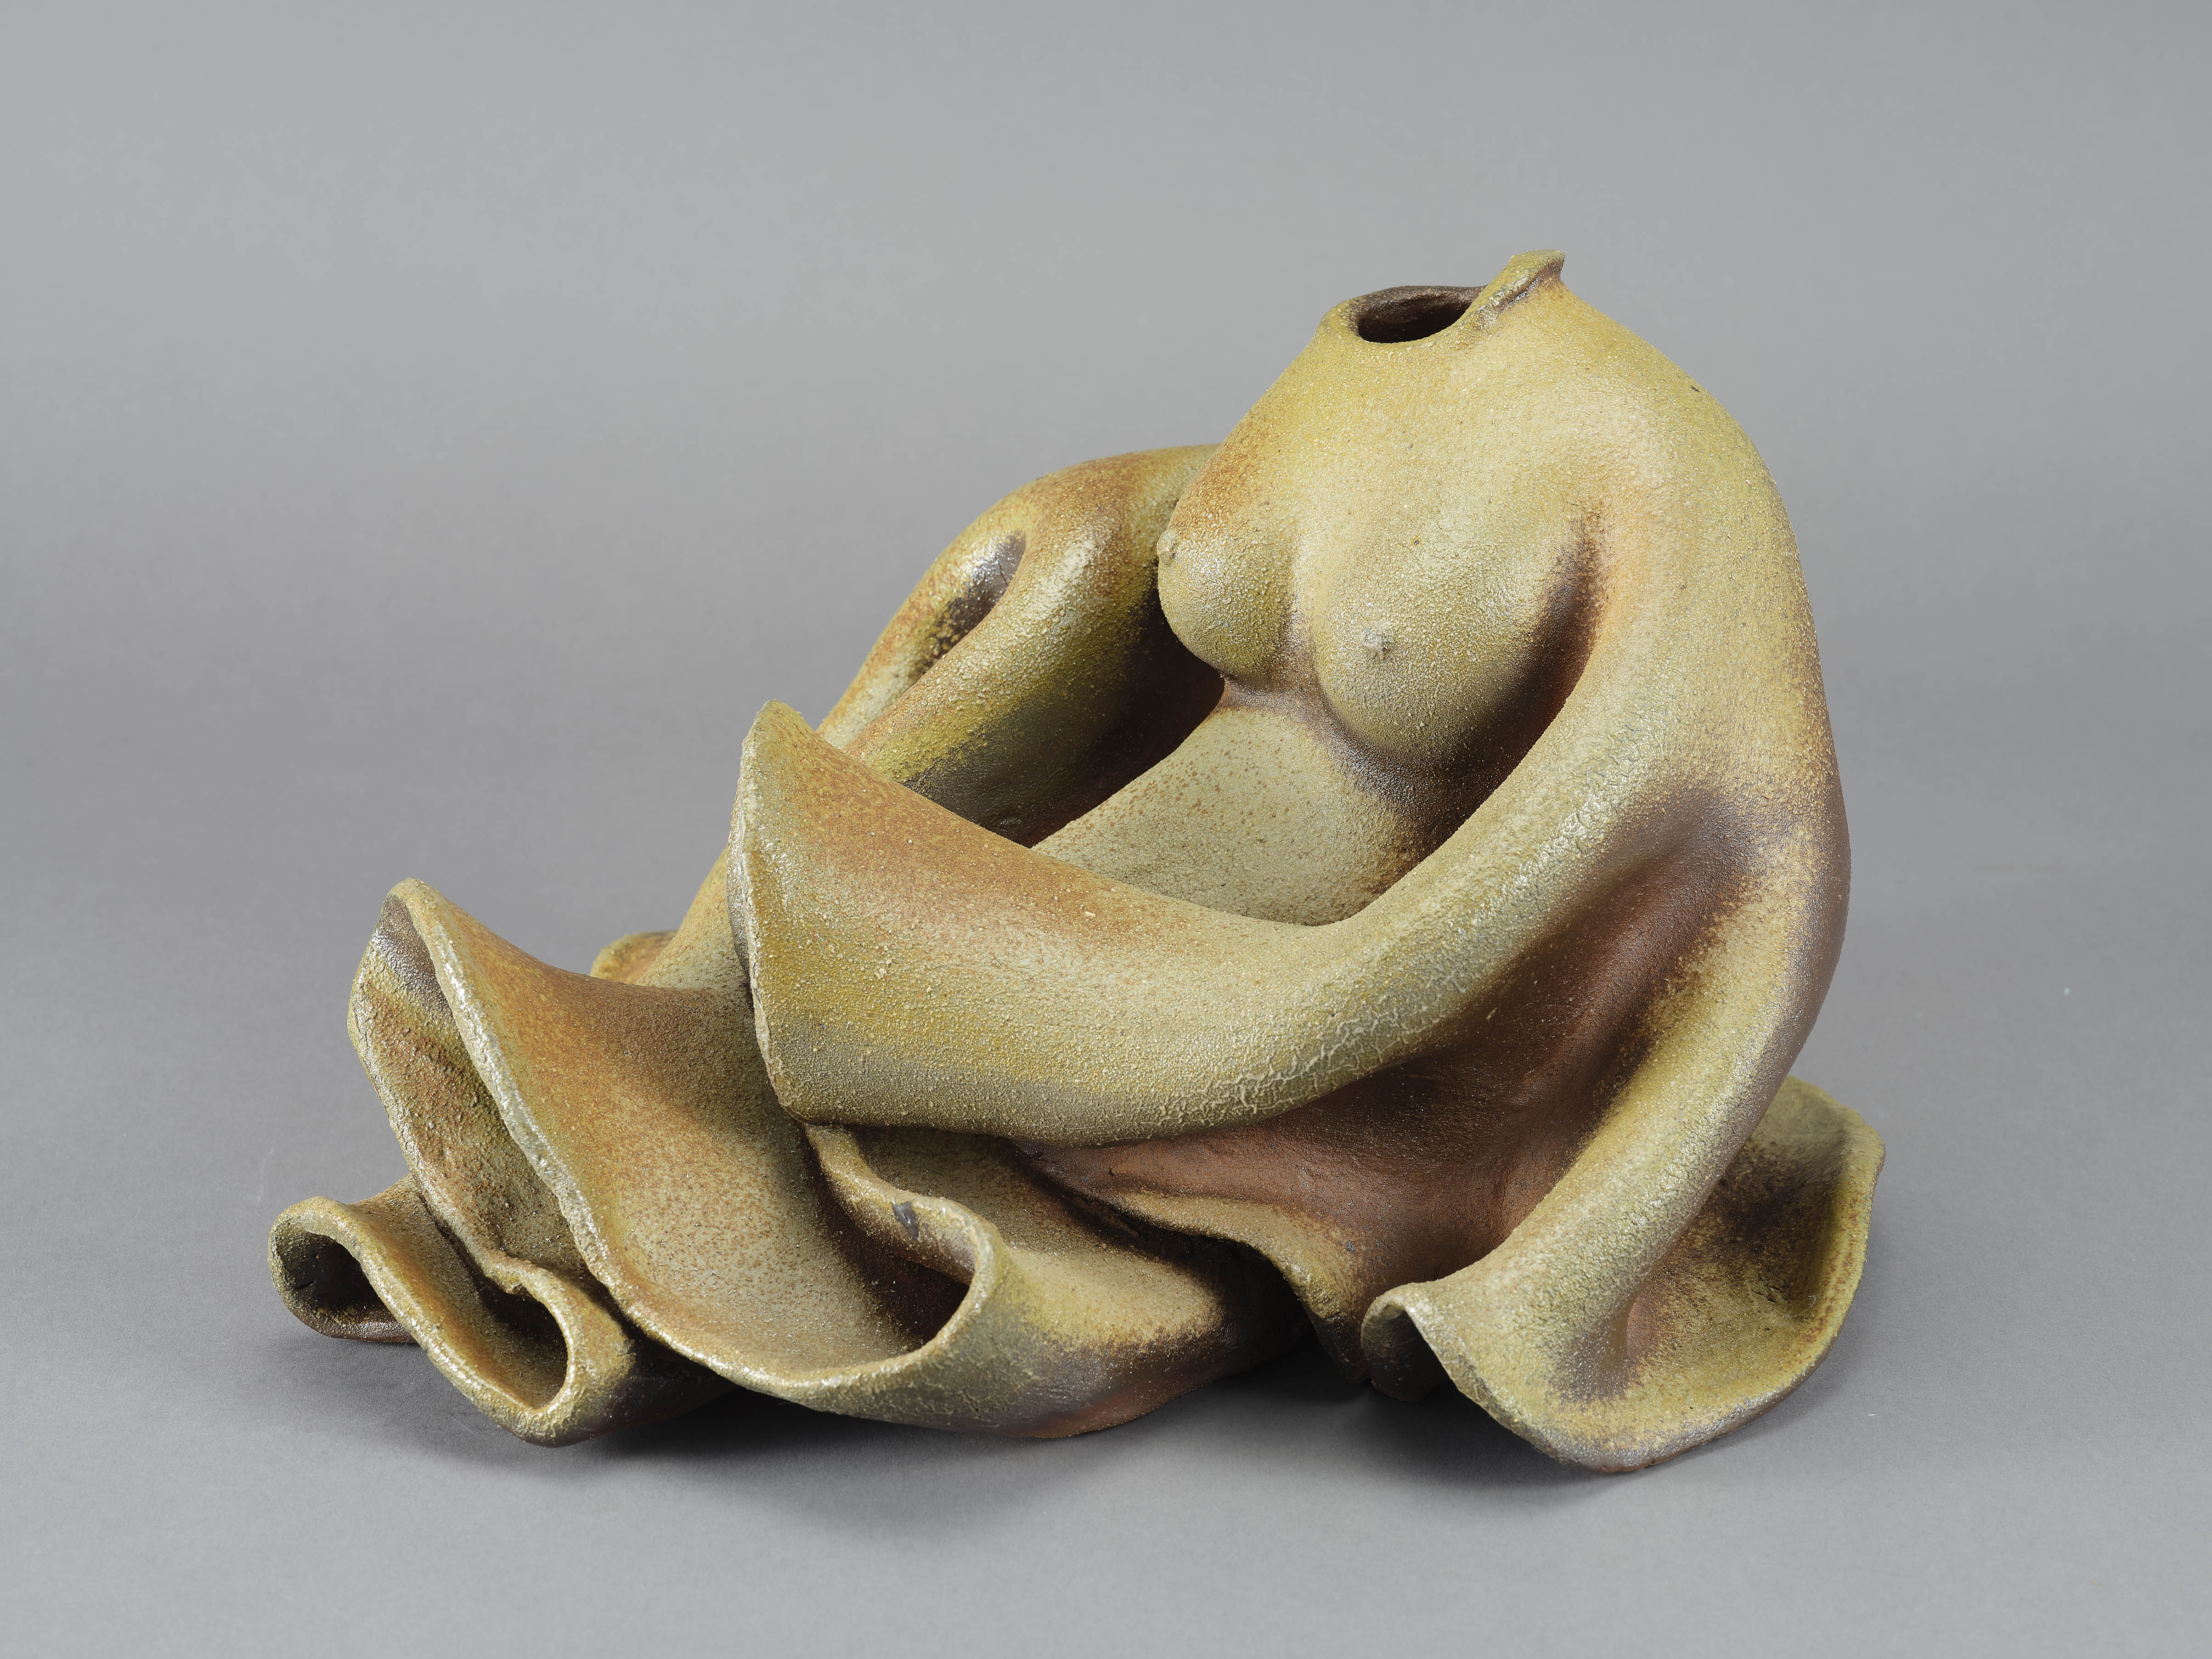 以陶塑柴燒方式表現女子婀娜姿態與衣物擬真結合的造形，整體呈現質樸，本作品並展現出具象與抽象形體之間的連結與轉化。